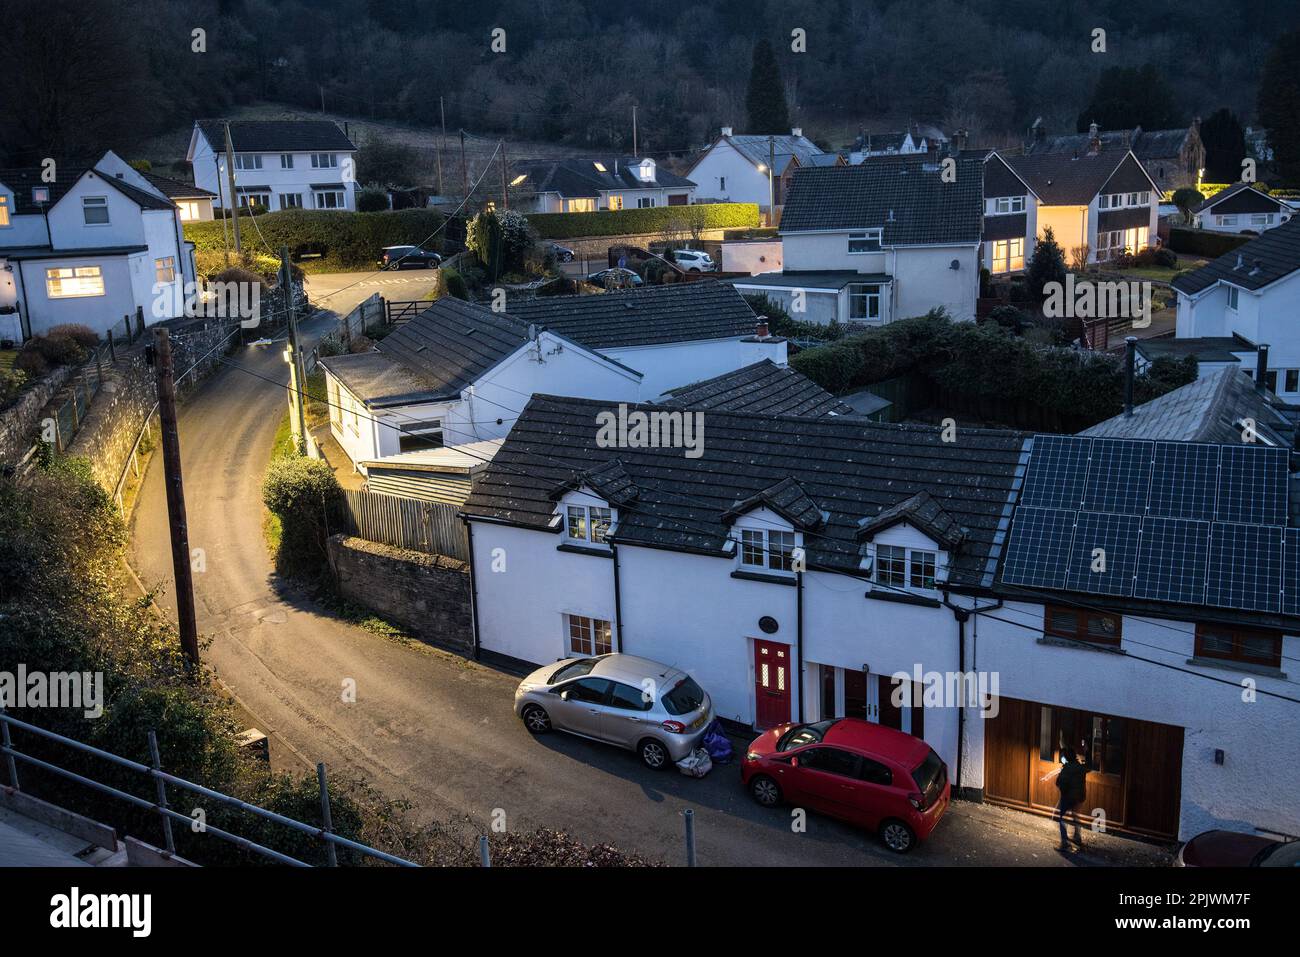 Village Street Lights de nuit, Llanfoist, pays de Galles, Royaume-Uni Banque D'Images